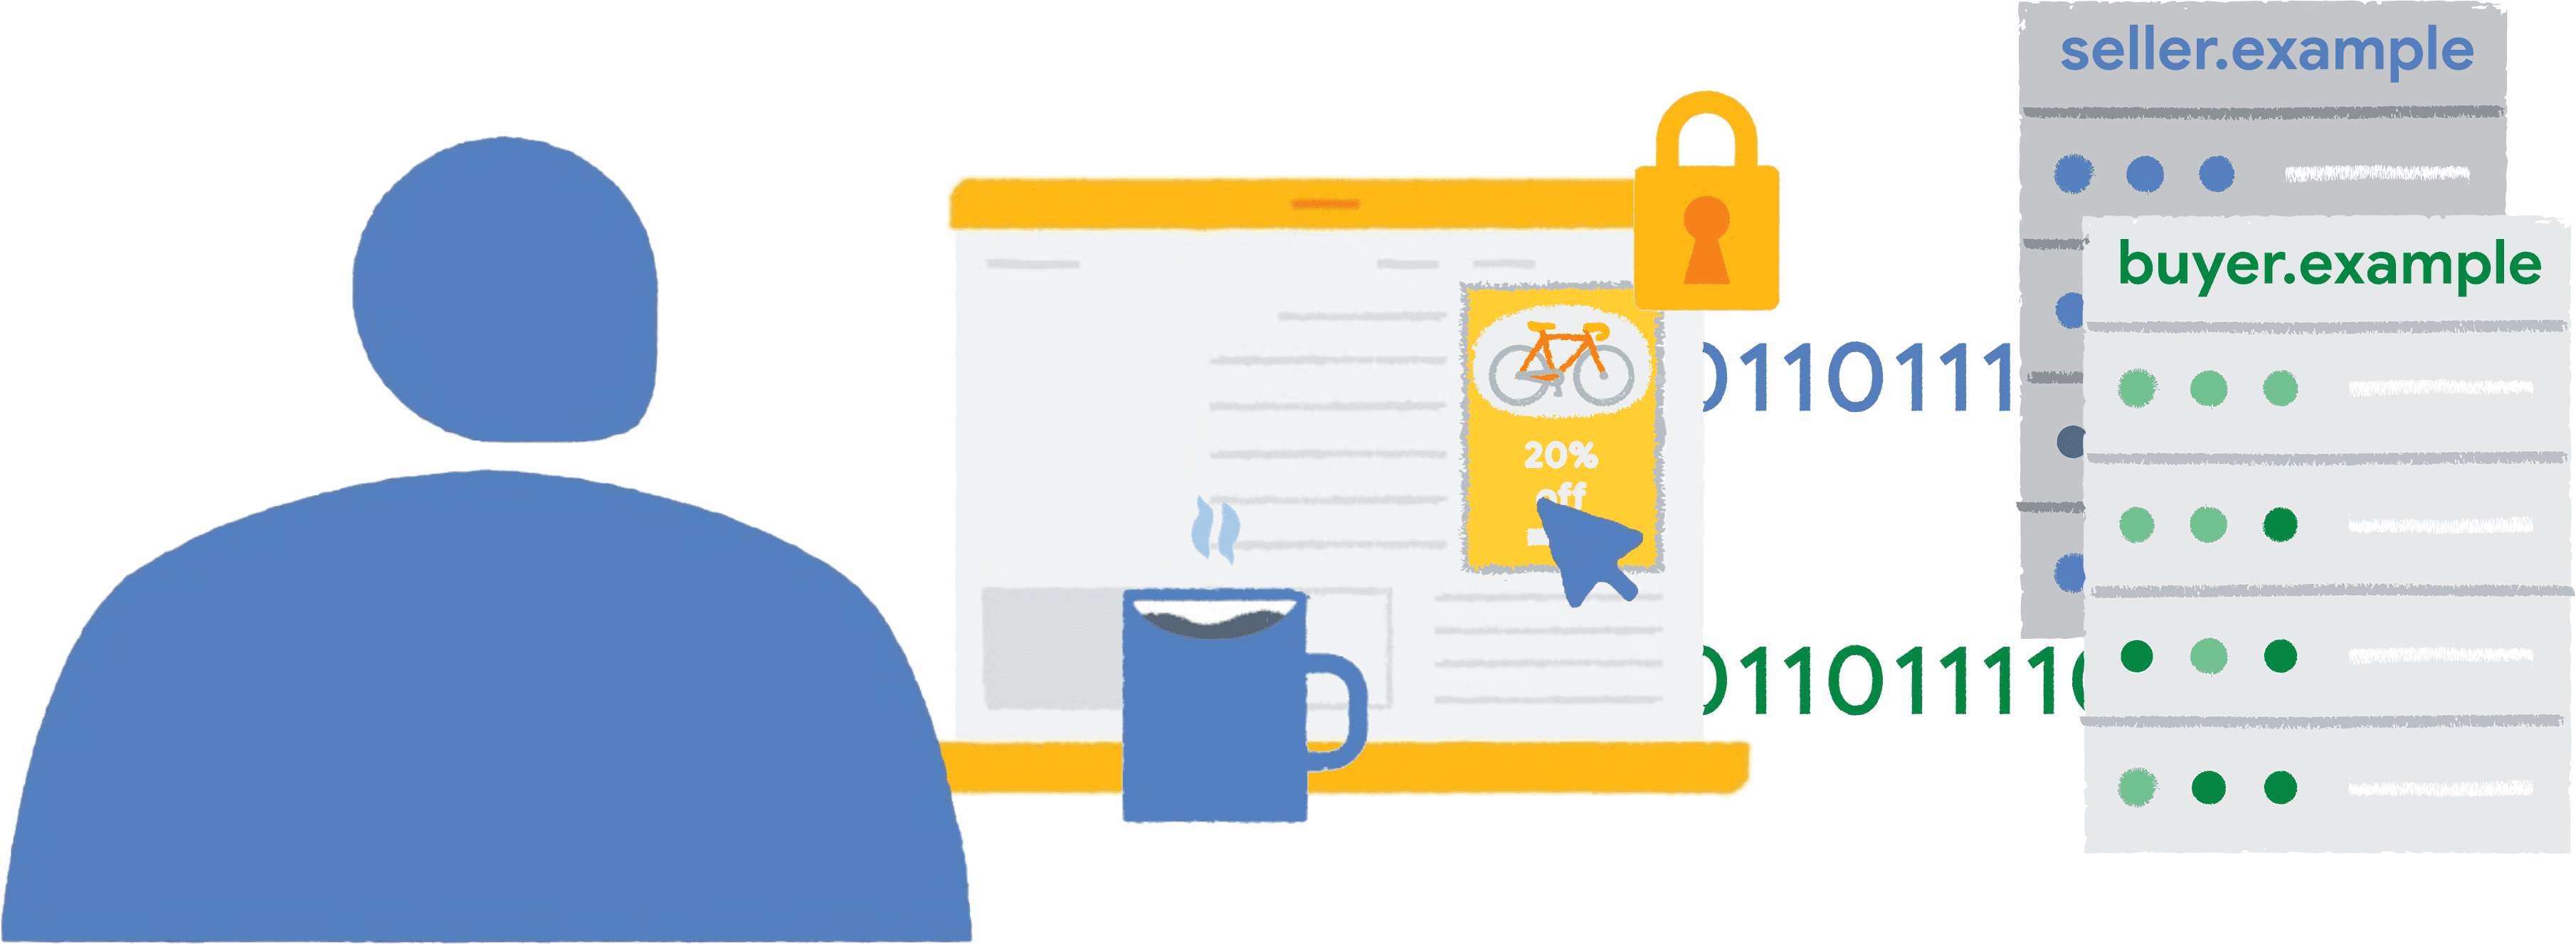 뉴스 웹사이트에서 펜스된 프레임 안의 자전거 광고를 클릭하는 사람을 보여주는 삽화에는 신고 데이터가 판매자와 구매자에게 전달됩니다.